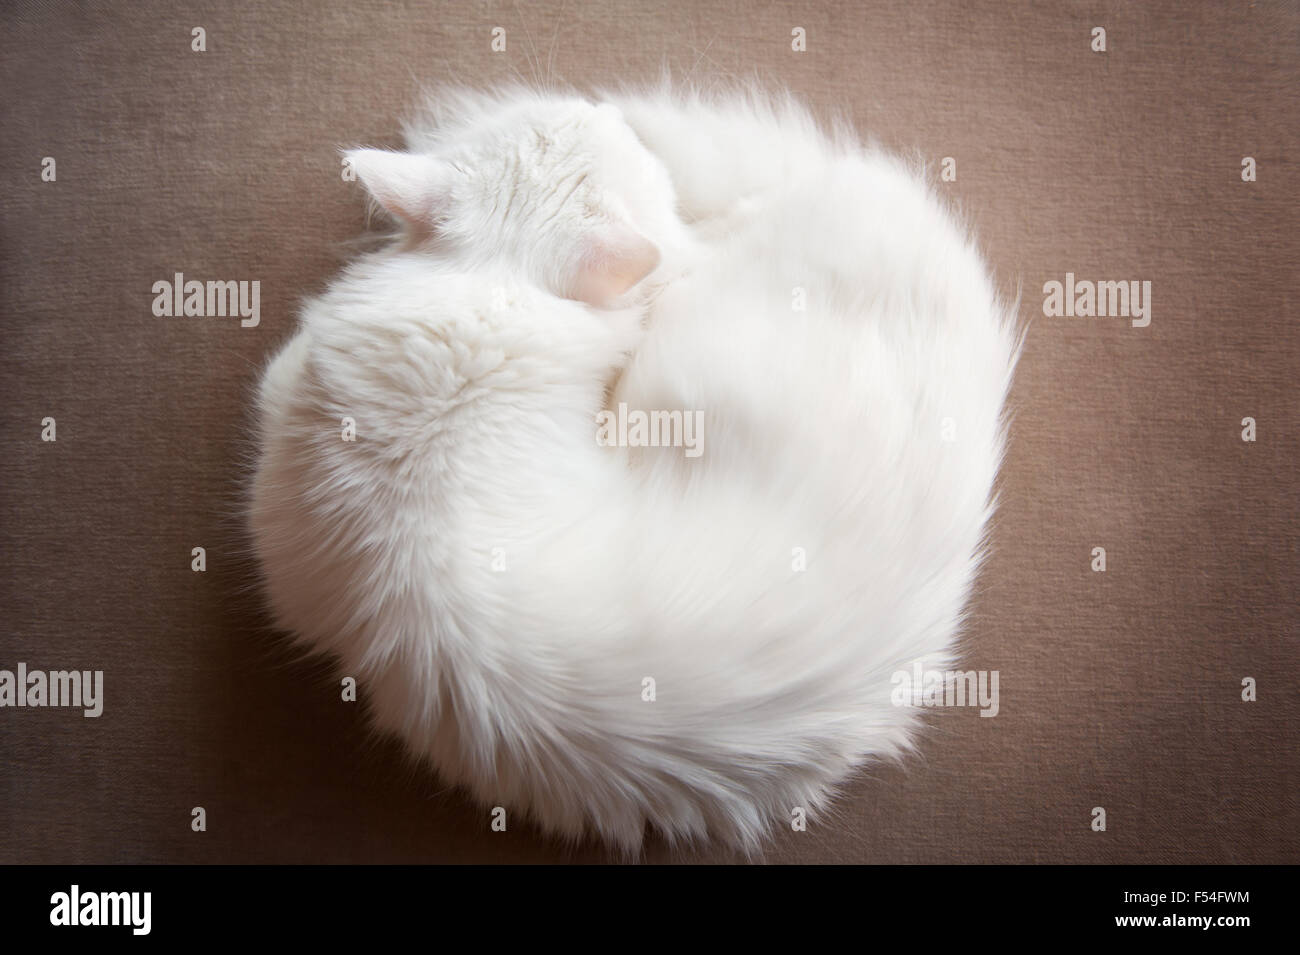 Angora turco gatto avvolto a ricciolo, Ankara kedisi o Ankara gatto domestico bianco di razza capelli lunghi gatto pelo animale vista da sopra Foto Stock